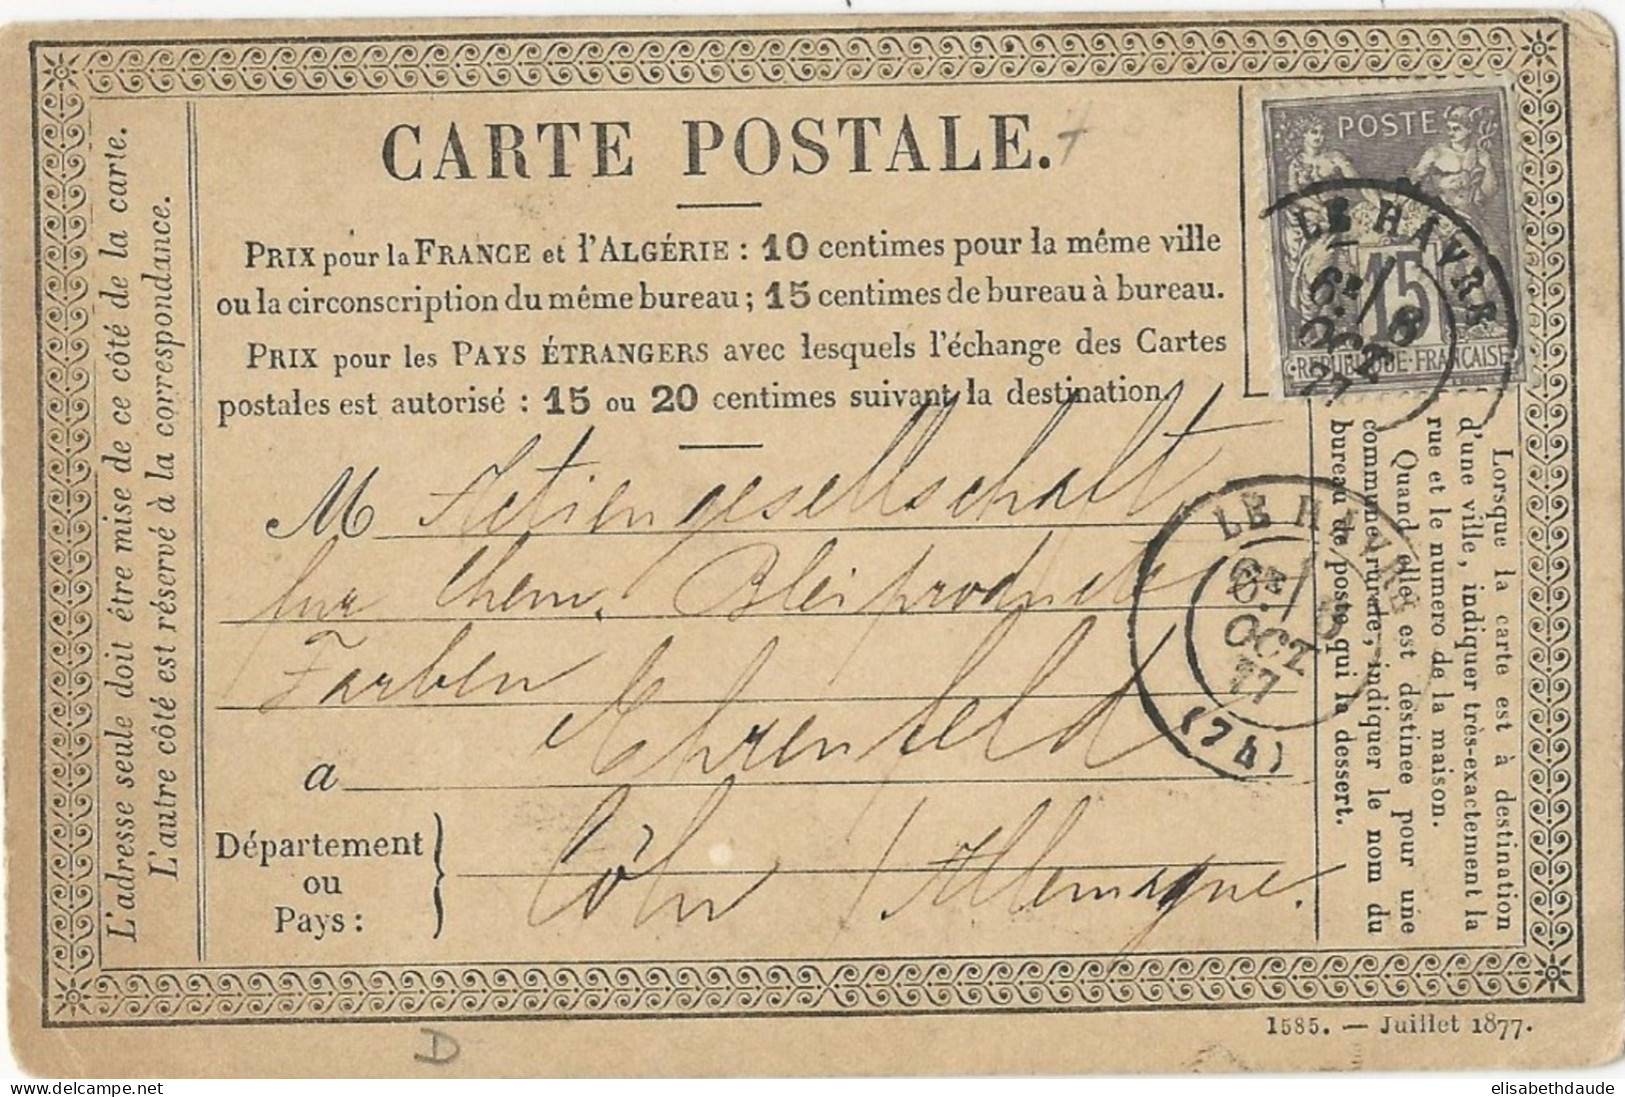 SEINE INFERIEURE - 1877 - CP PRECURSEUR ENTIER SAGE REPIQUAGE PRIVE TRANSPORT MARITIME MOHR à LE HAVRE => ALLEMAGNE !! - Cartes Précurseurs